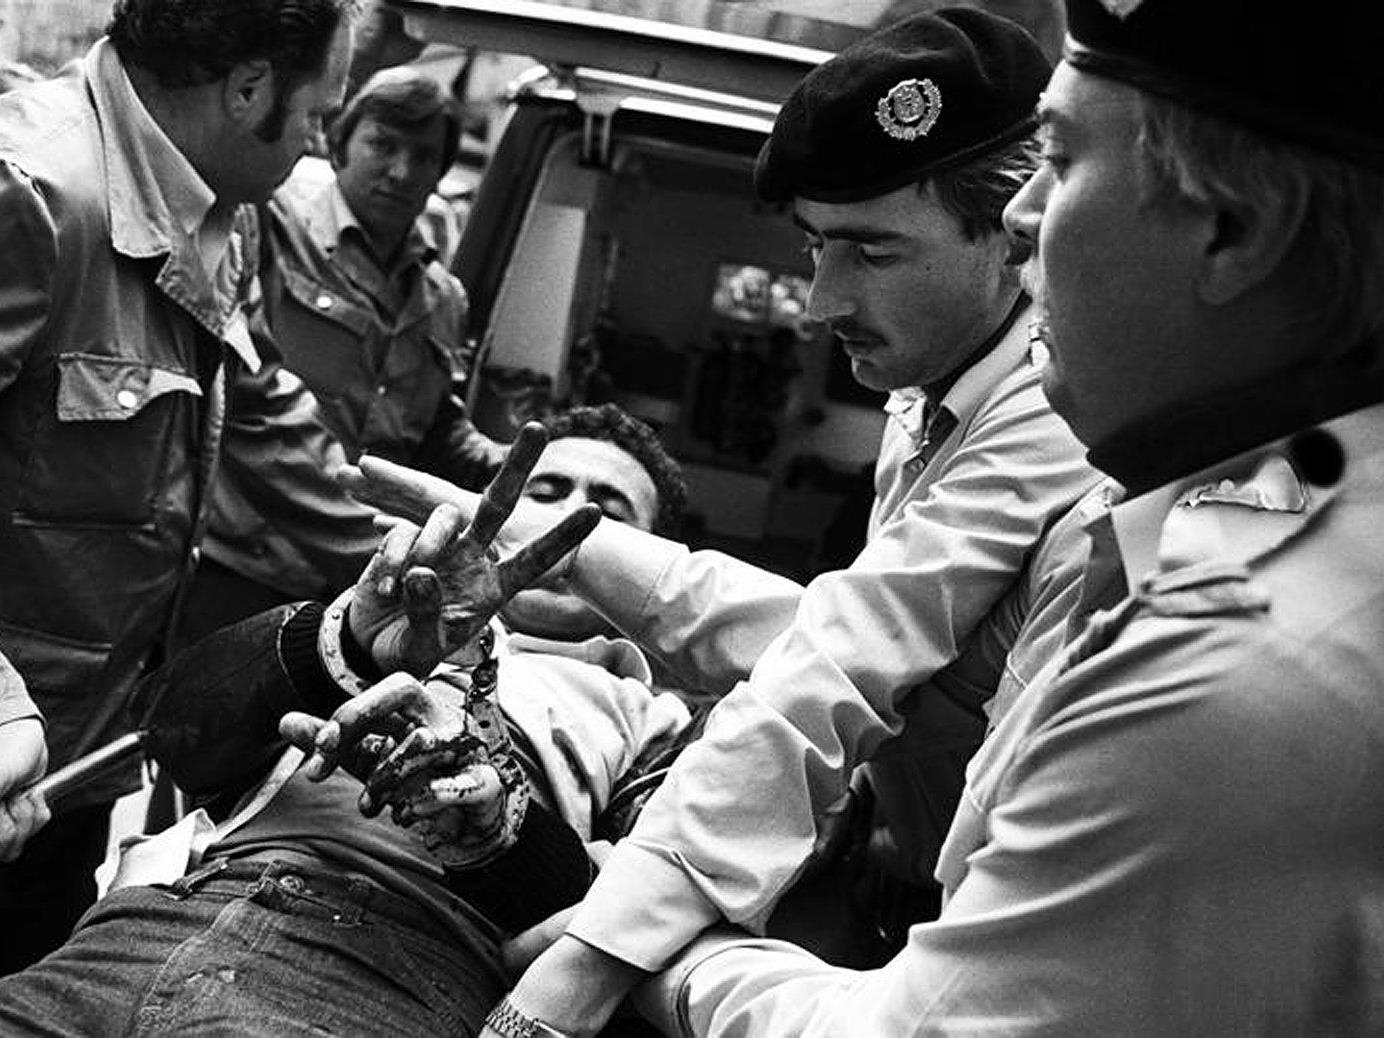 Ein verletzter Terrorist umringt von Polizeibeamten und Sanitätern am 29. August 1981 in Wien.